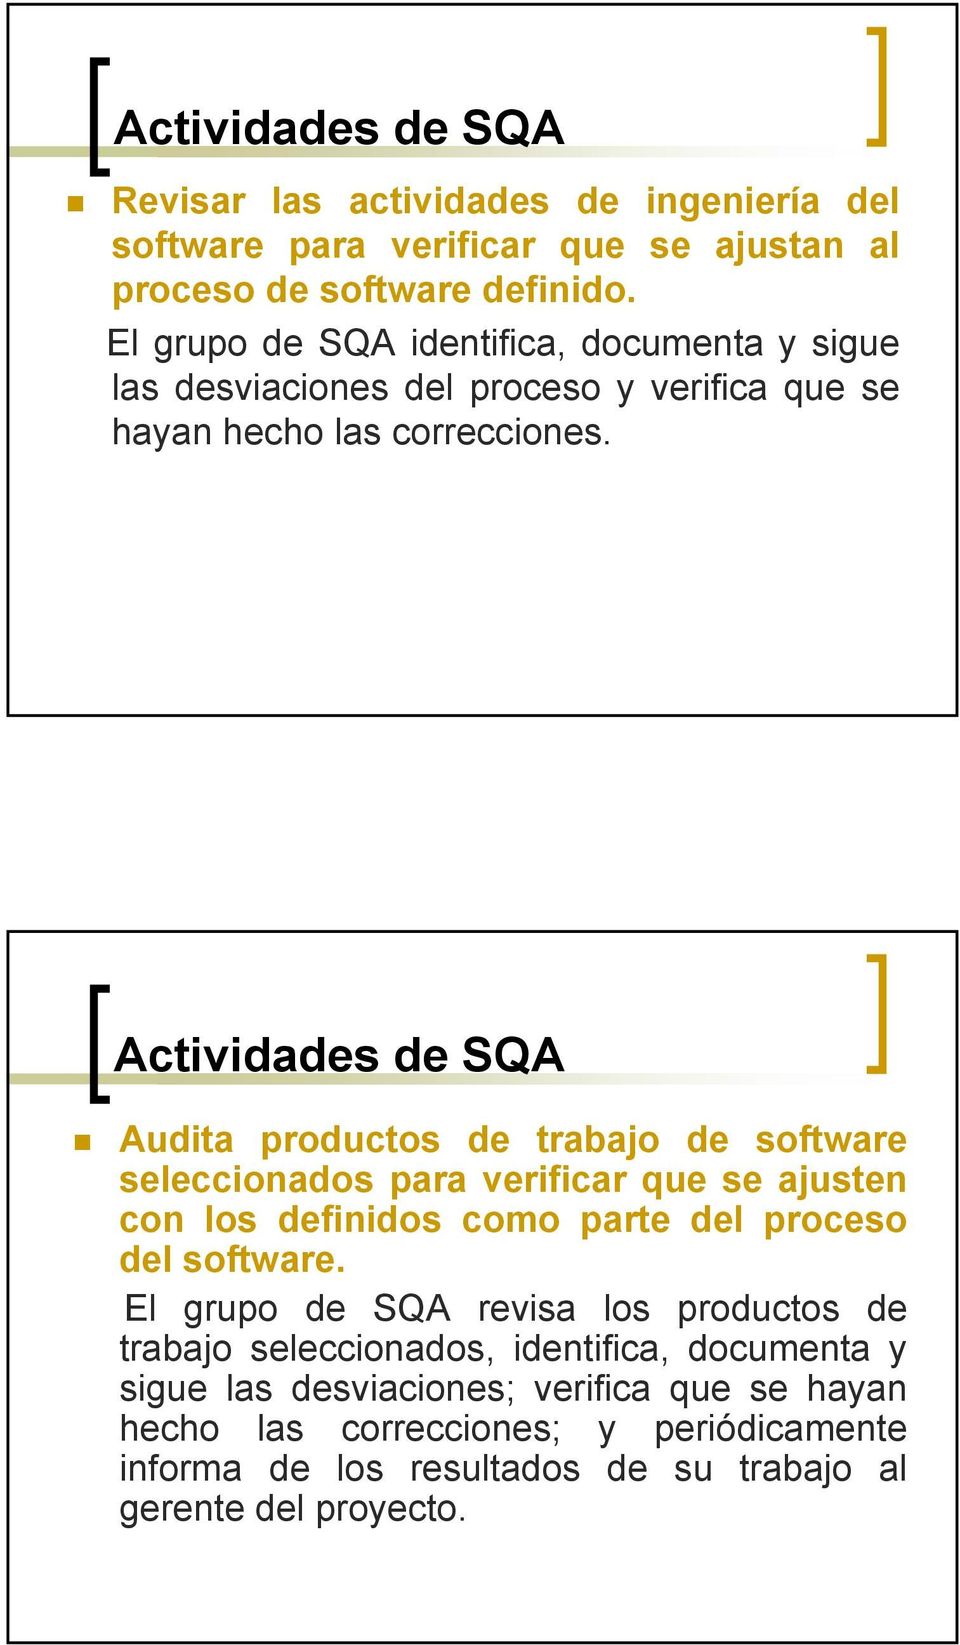 Actividades de SQA Audita productos de trabajo de software seleccionados para verificar que se ajusten con los definidos como parte del proceso del software.